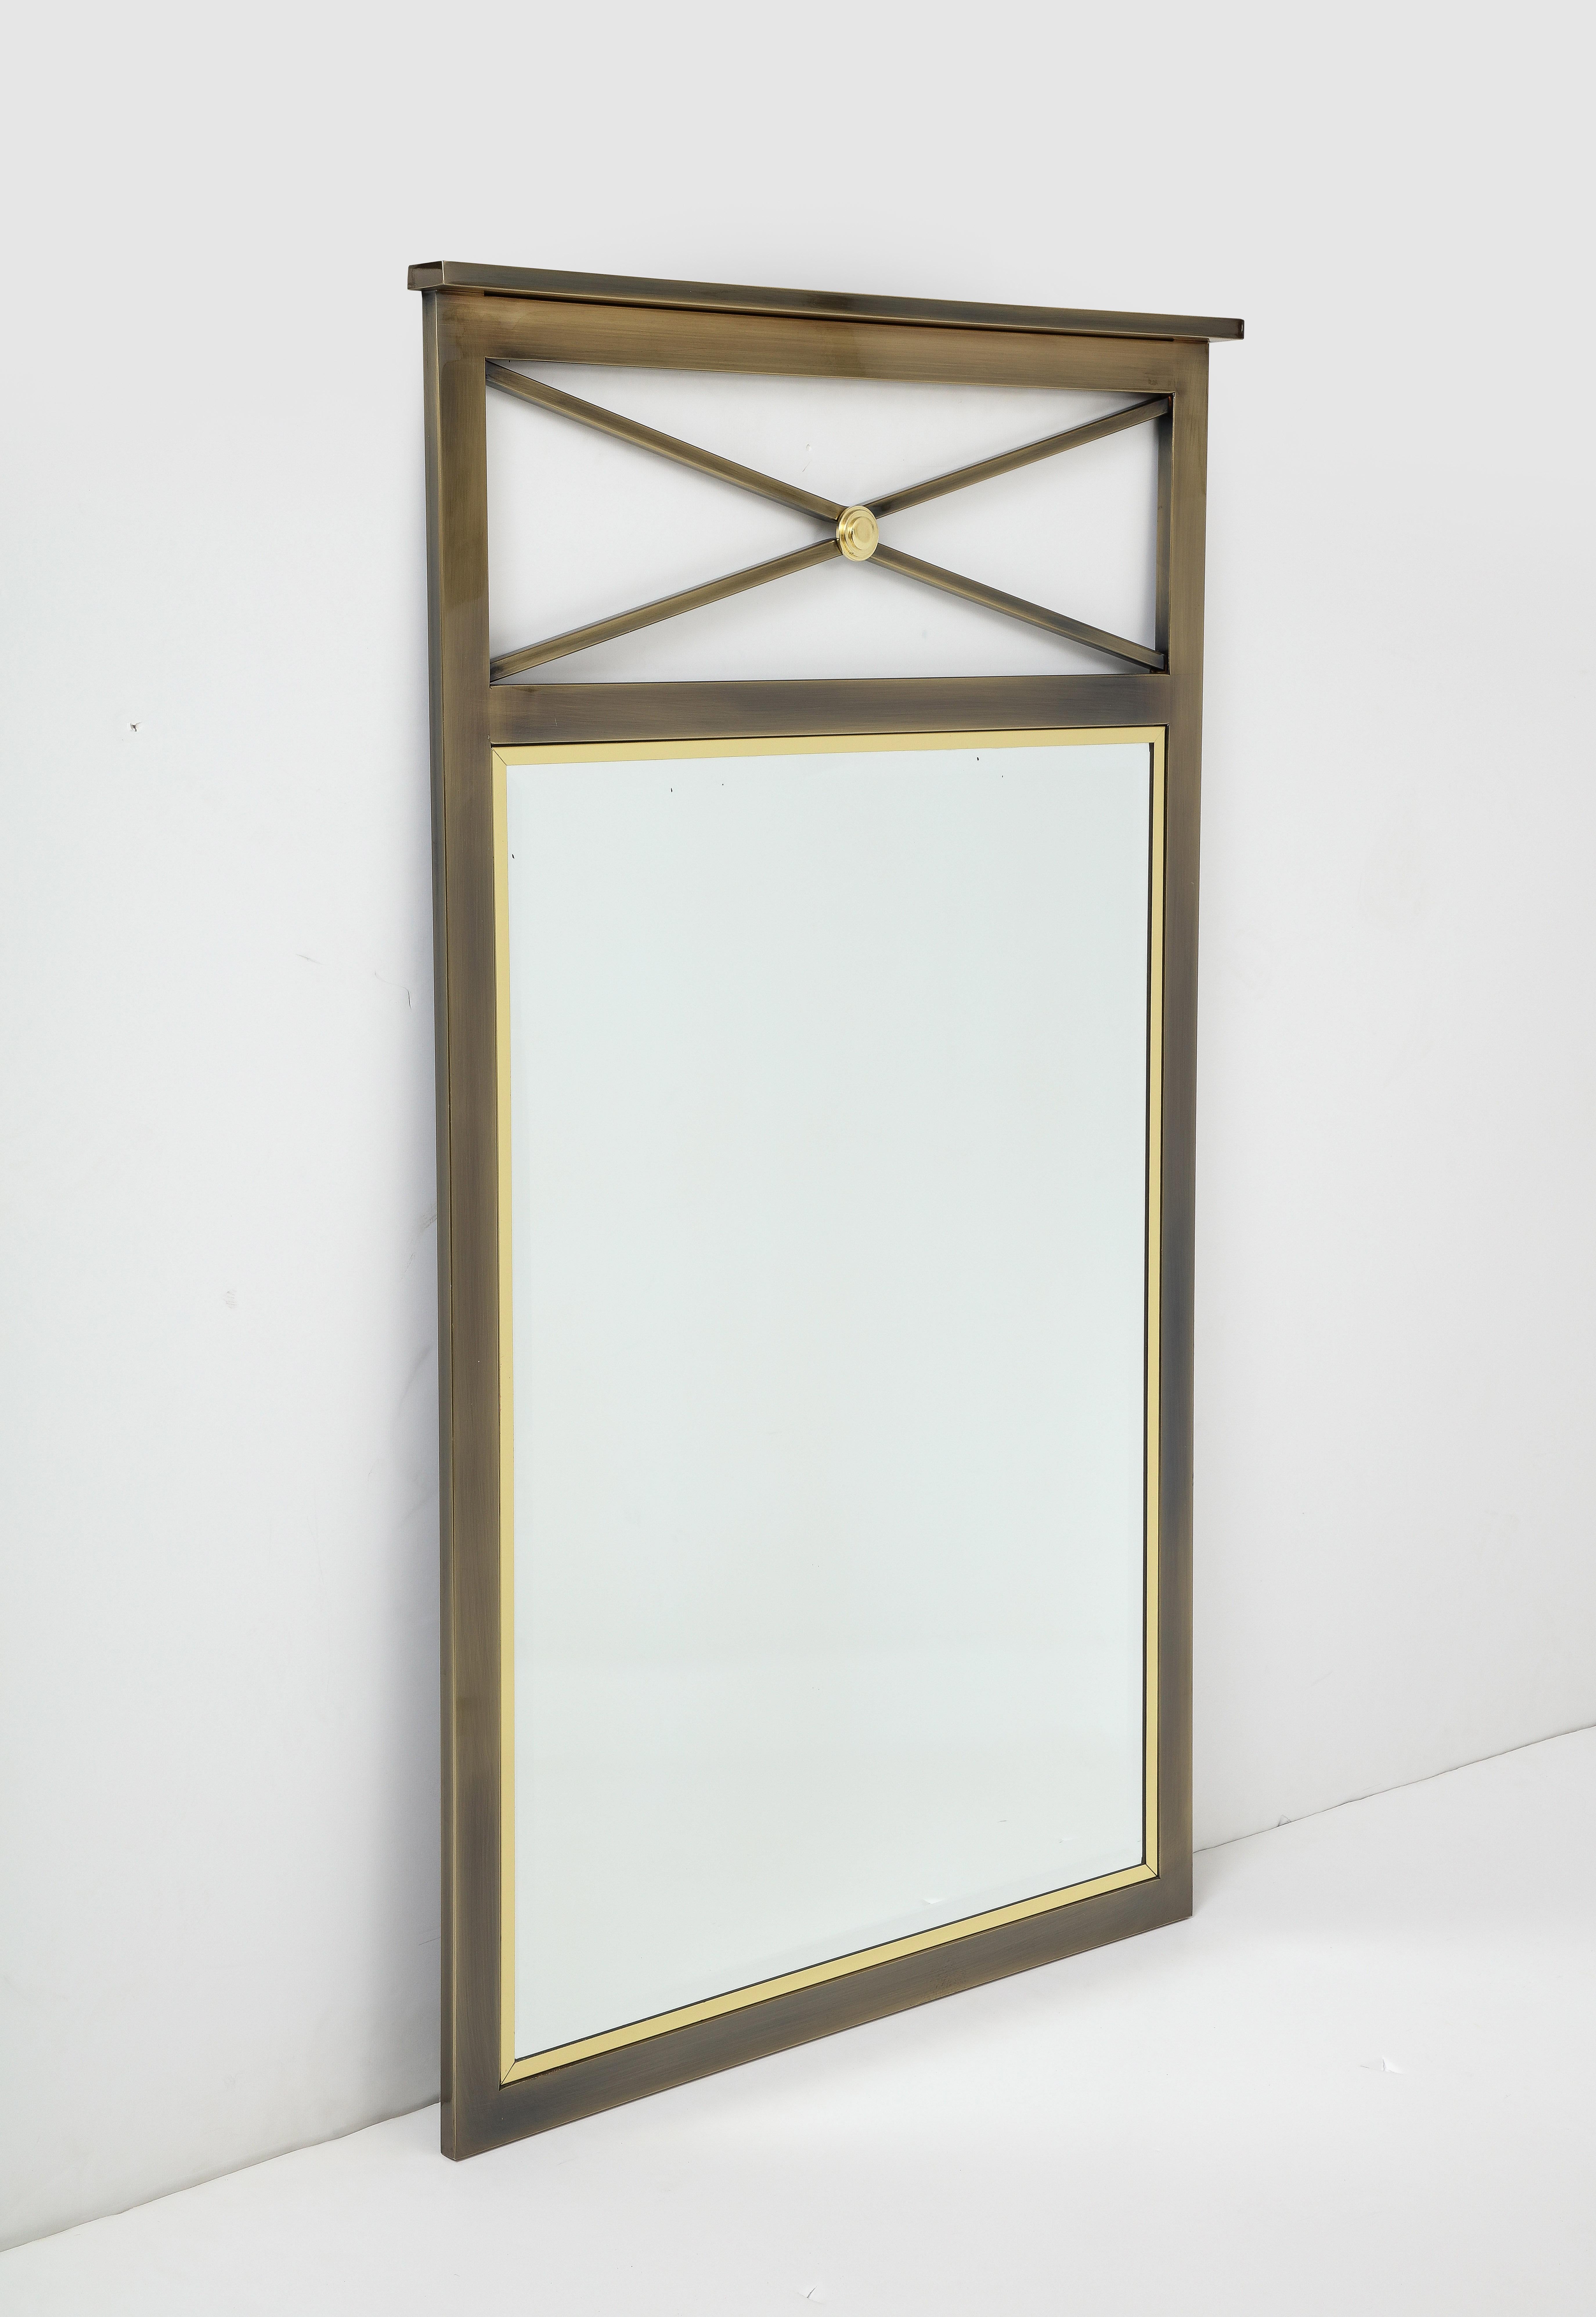 Neoklassizistischer Spiegel aus der Mitte des Jahrhunderts, umgeben von Messingverzierungen und einem Bronzerahmen, hergestellt vom Design Institute of America.